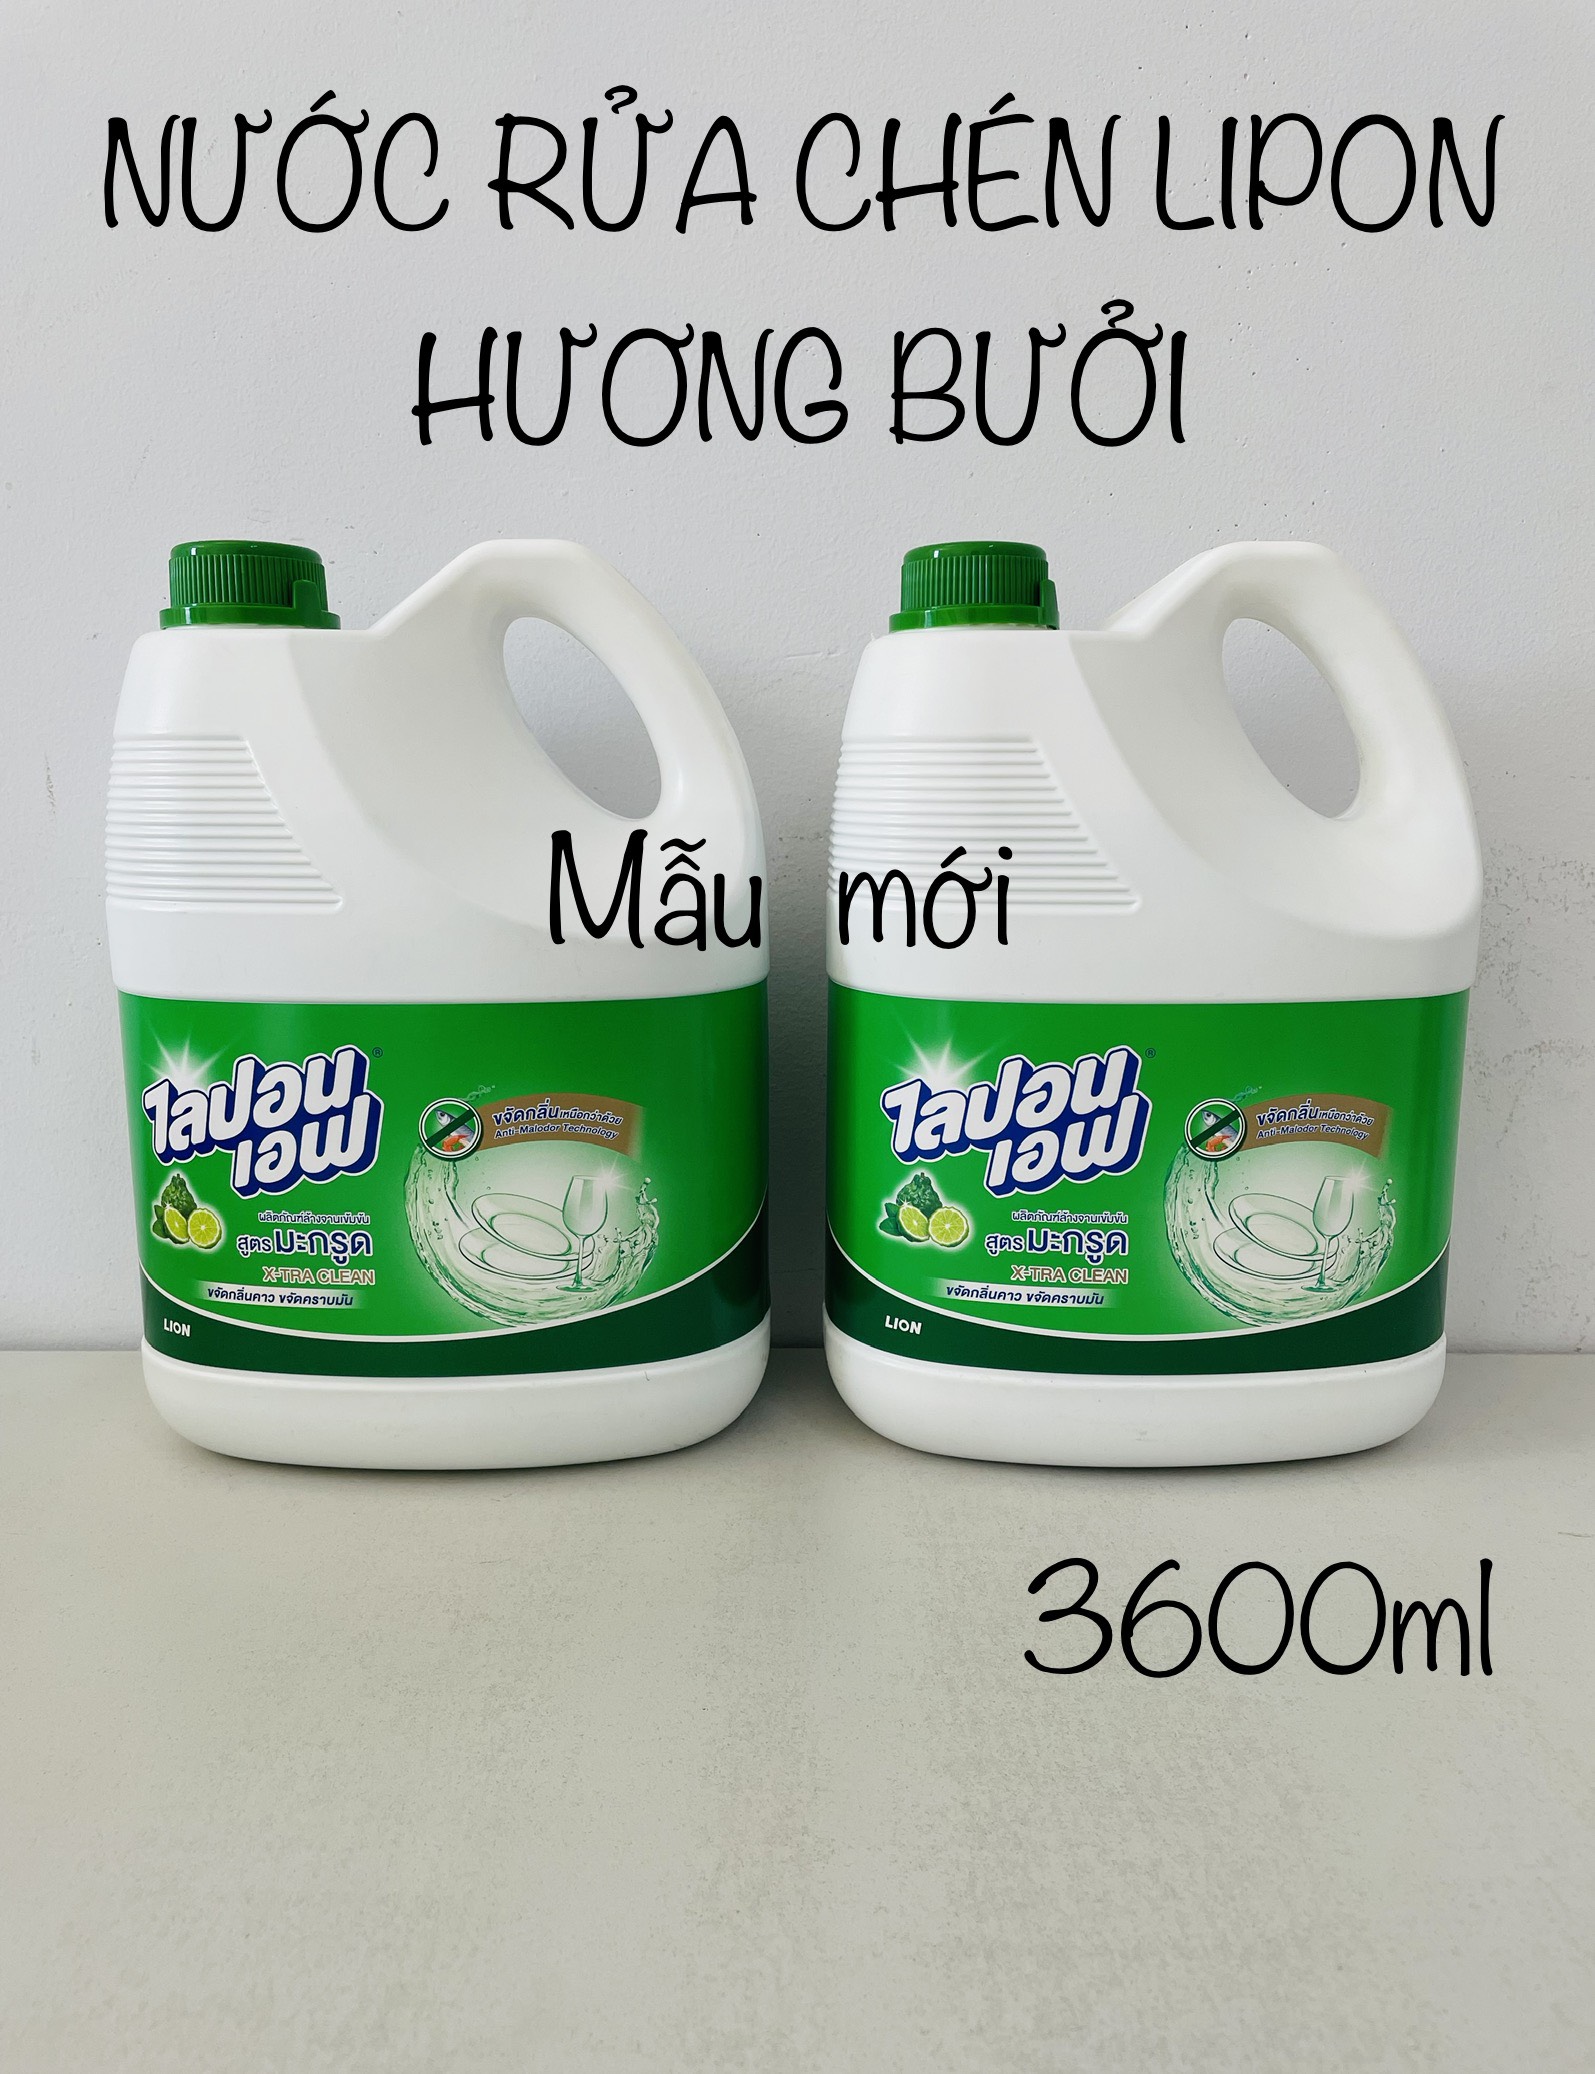 Nước rửa chén bát, ly tách Lipon Bergamote Hương bưởi 3600ml - Hàng Thái